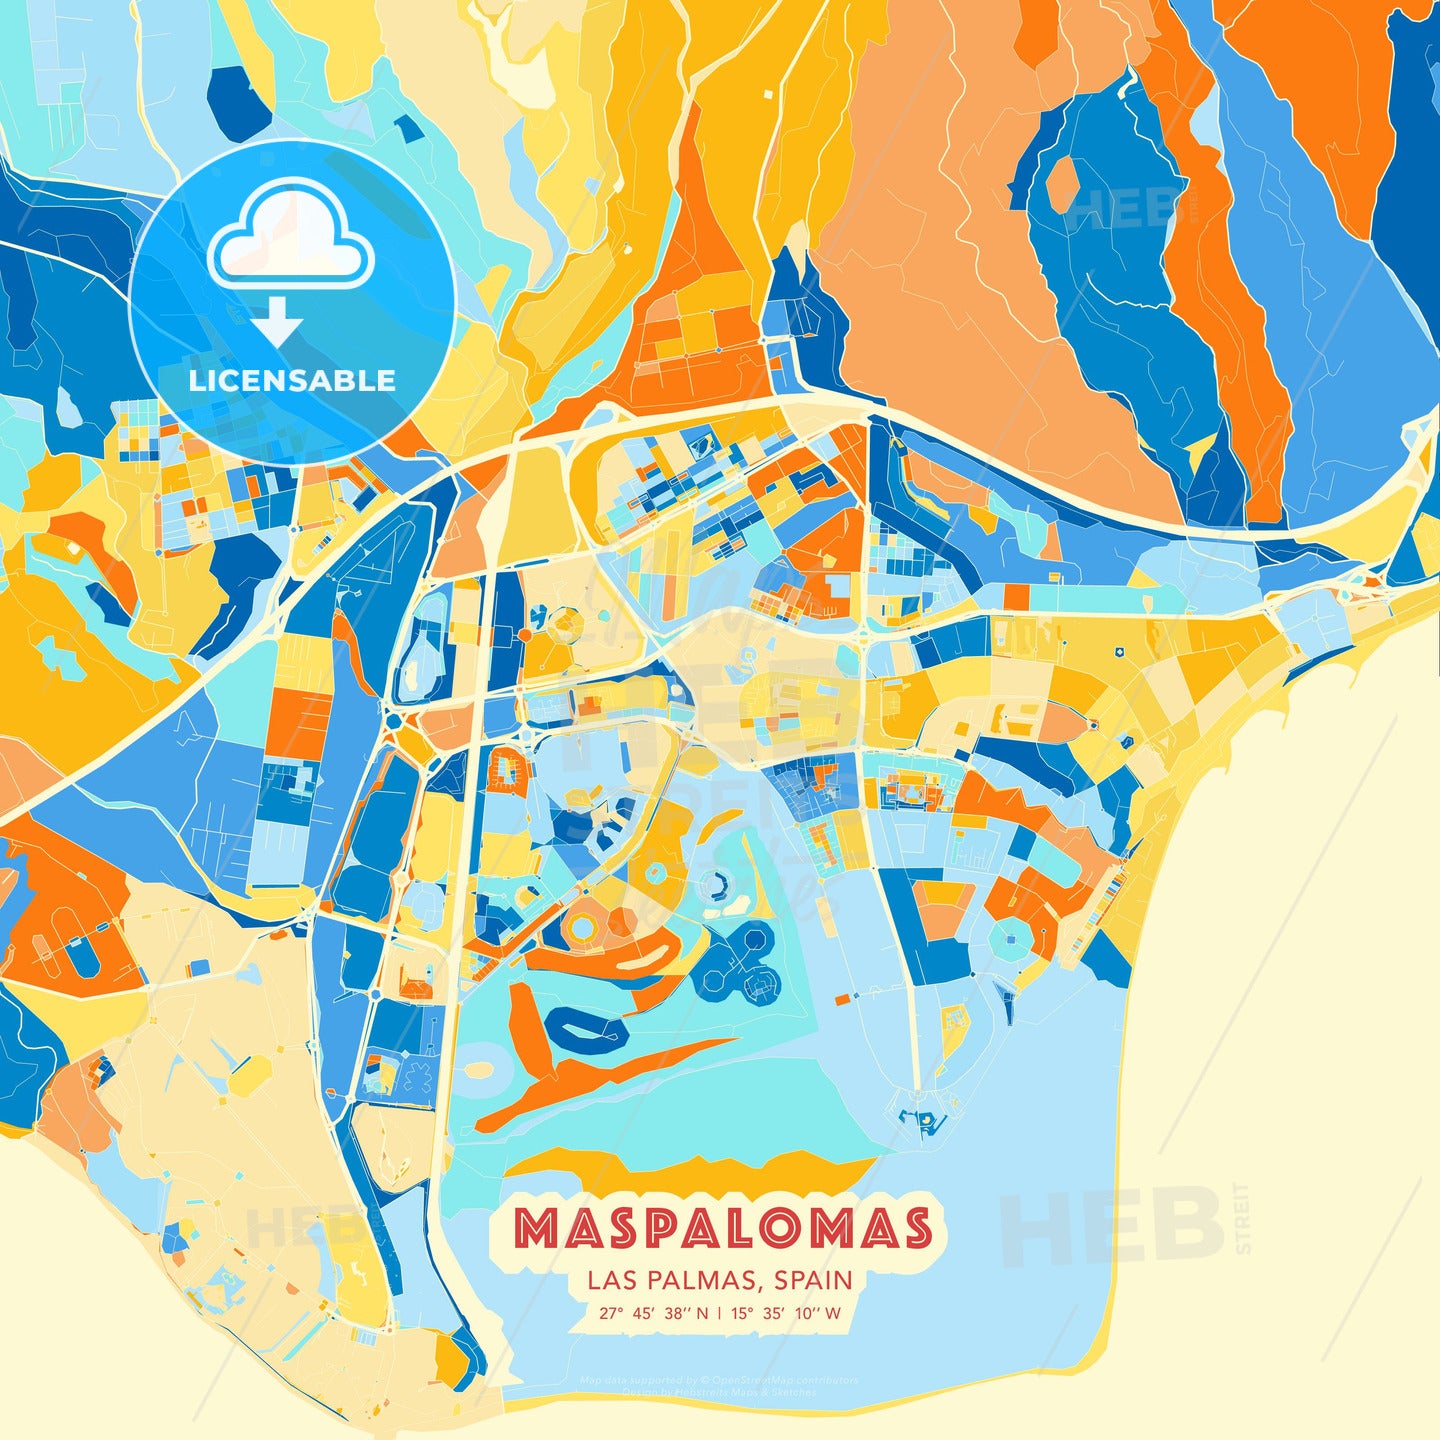 Maspalomas, Las Palmas, Spain, map - HEBSTREITS Sketches